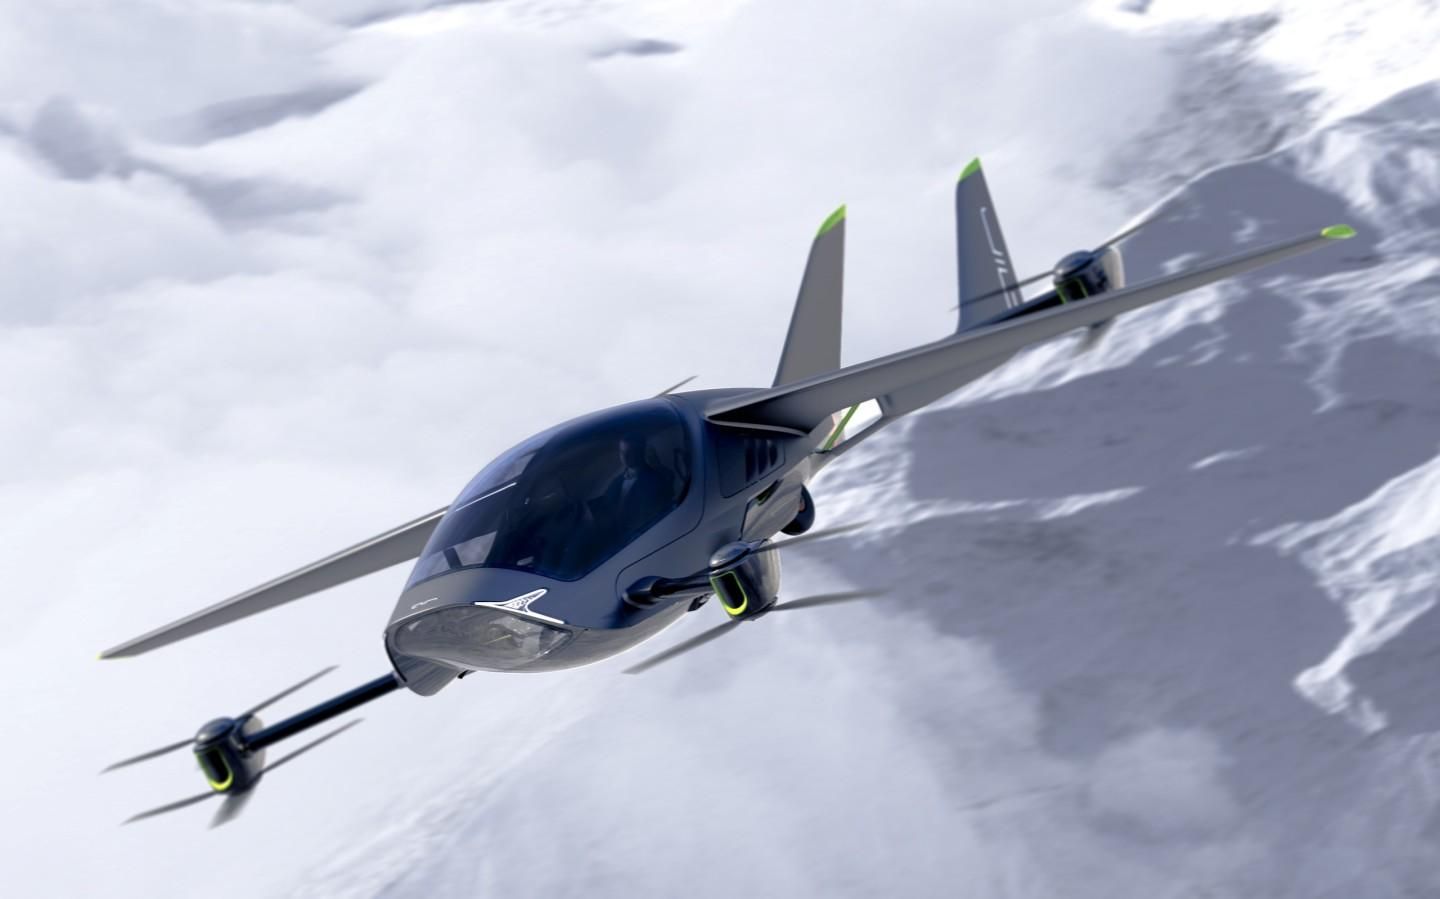 Израильская компания Air разрабатывает электрический самолет для персонального использования - Инновации